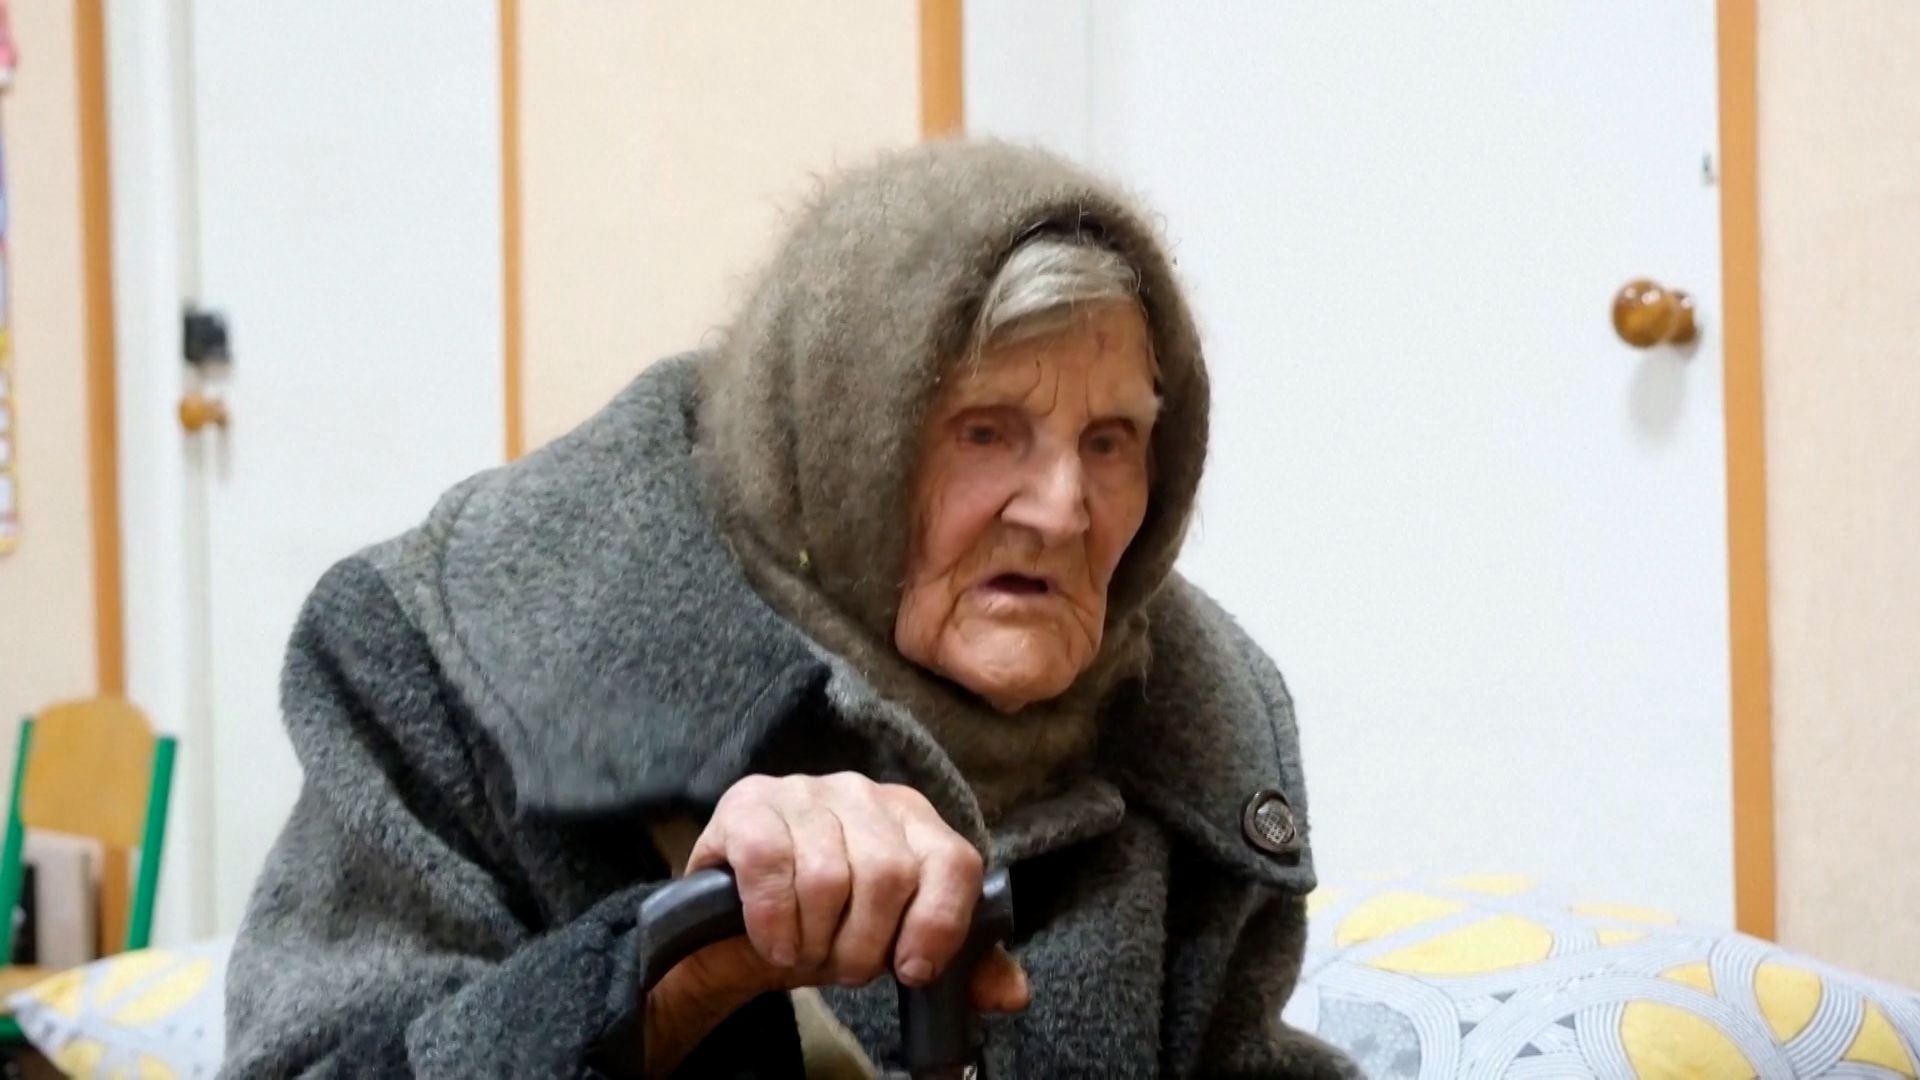 Una ucraniana de 98 años caminó 10 km bajo los bombardeos para escapar de los rusos